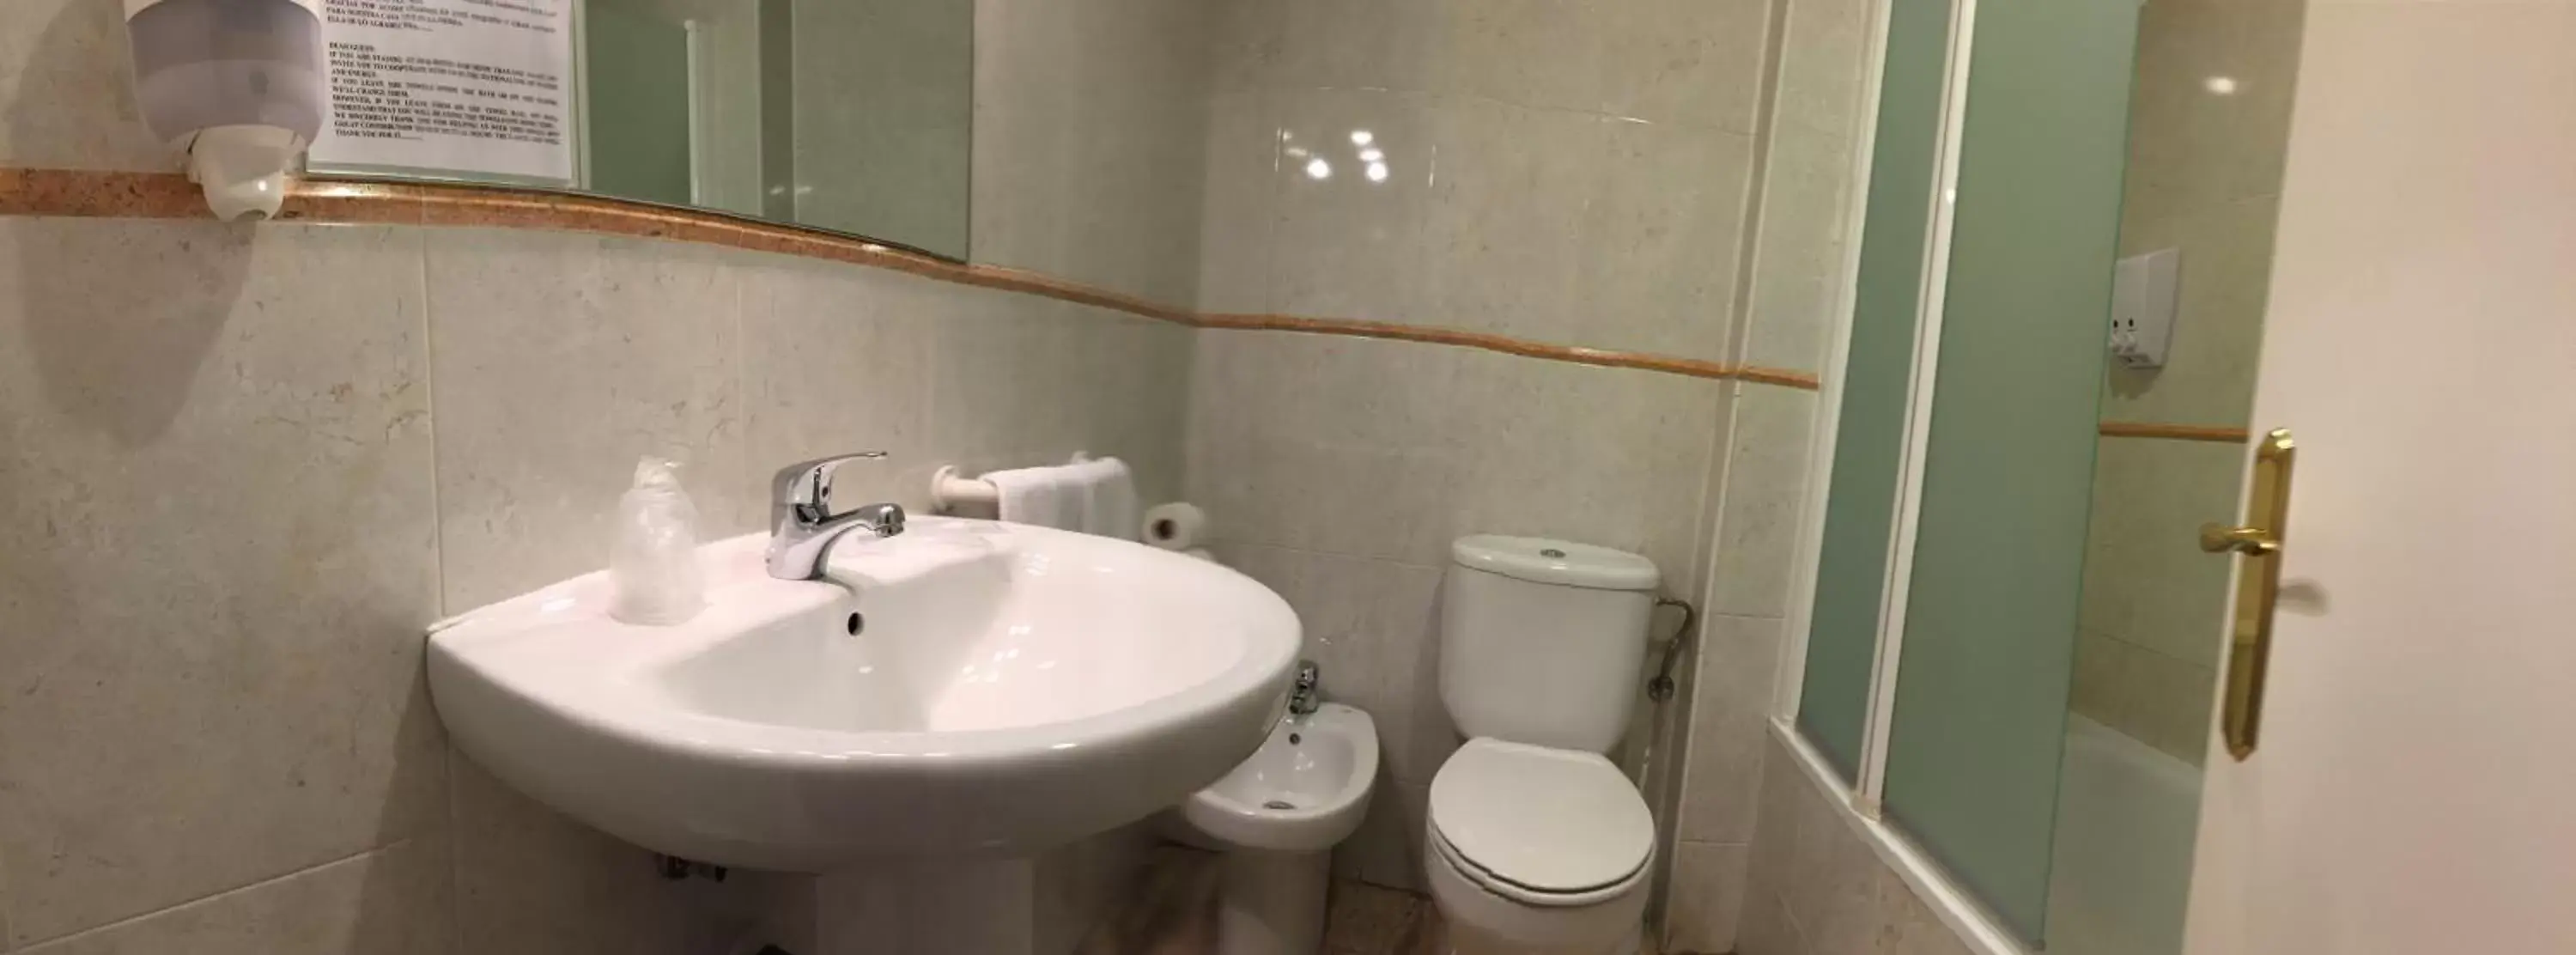 Bathroom in Hotel Barajas Plaza